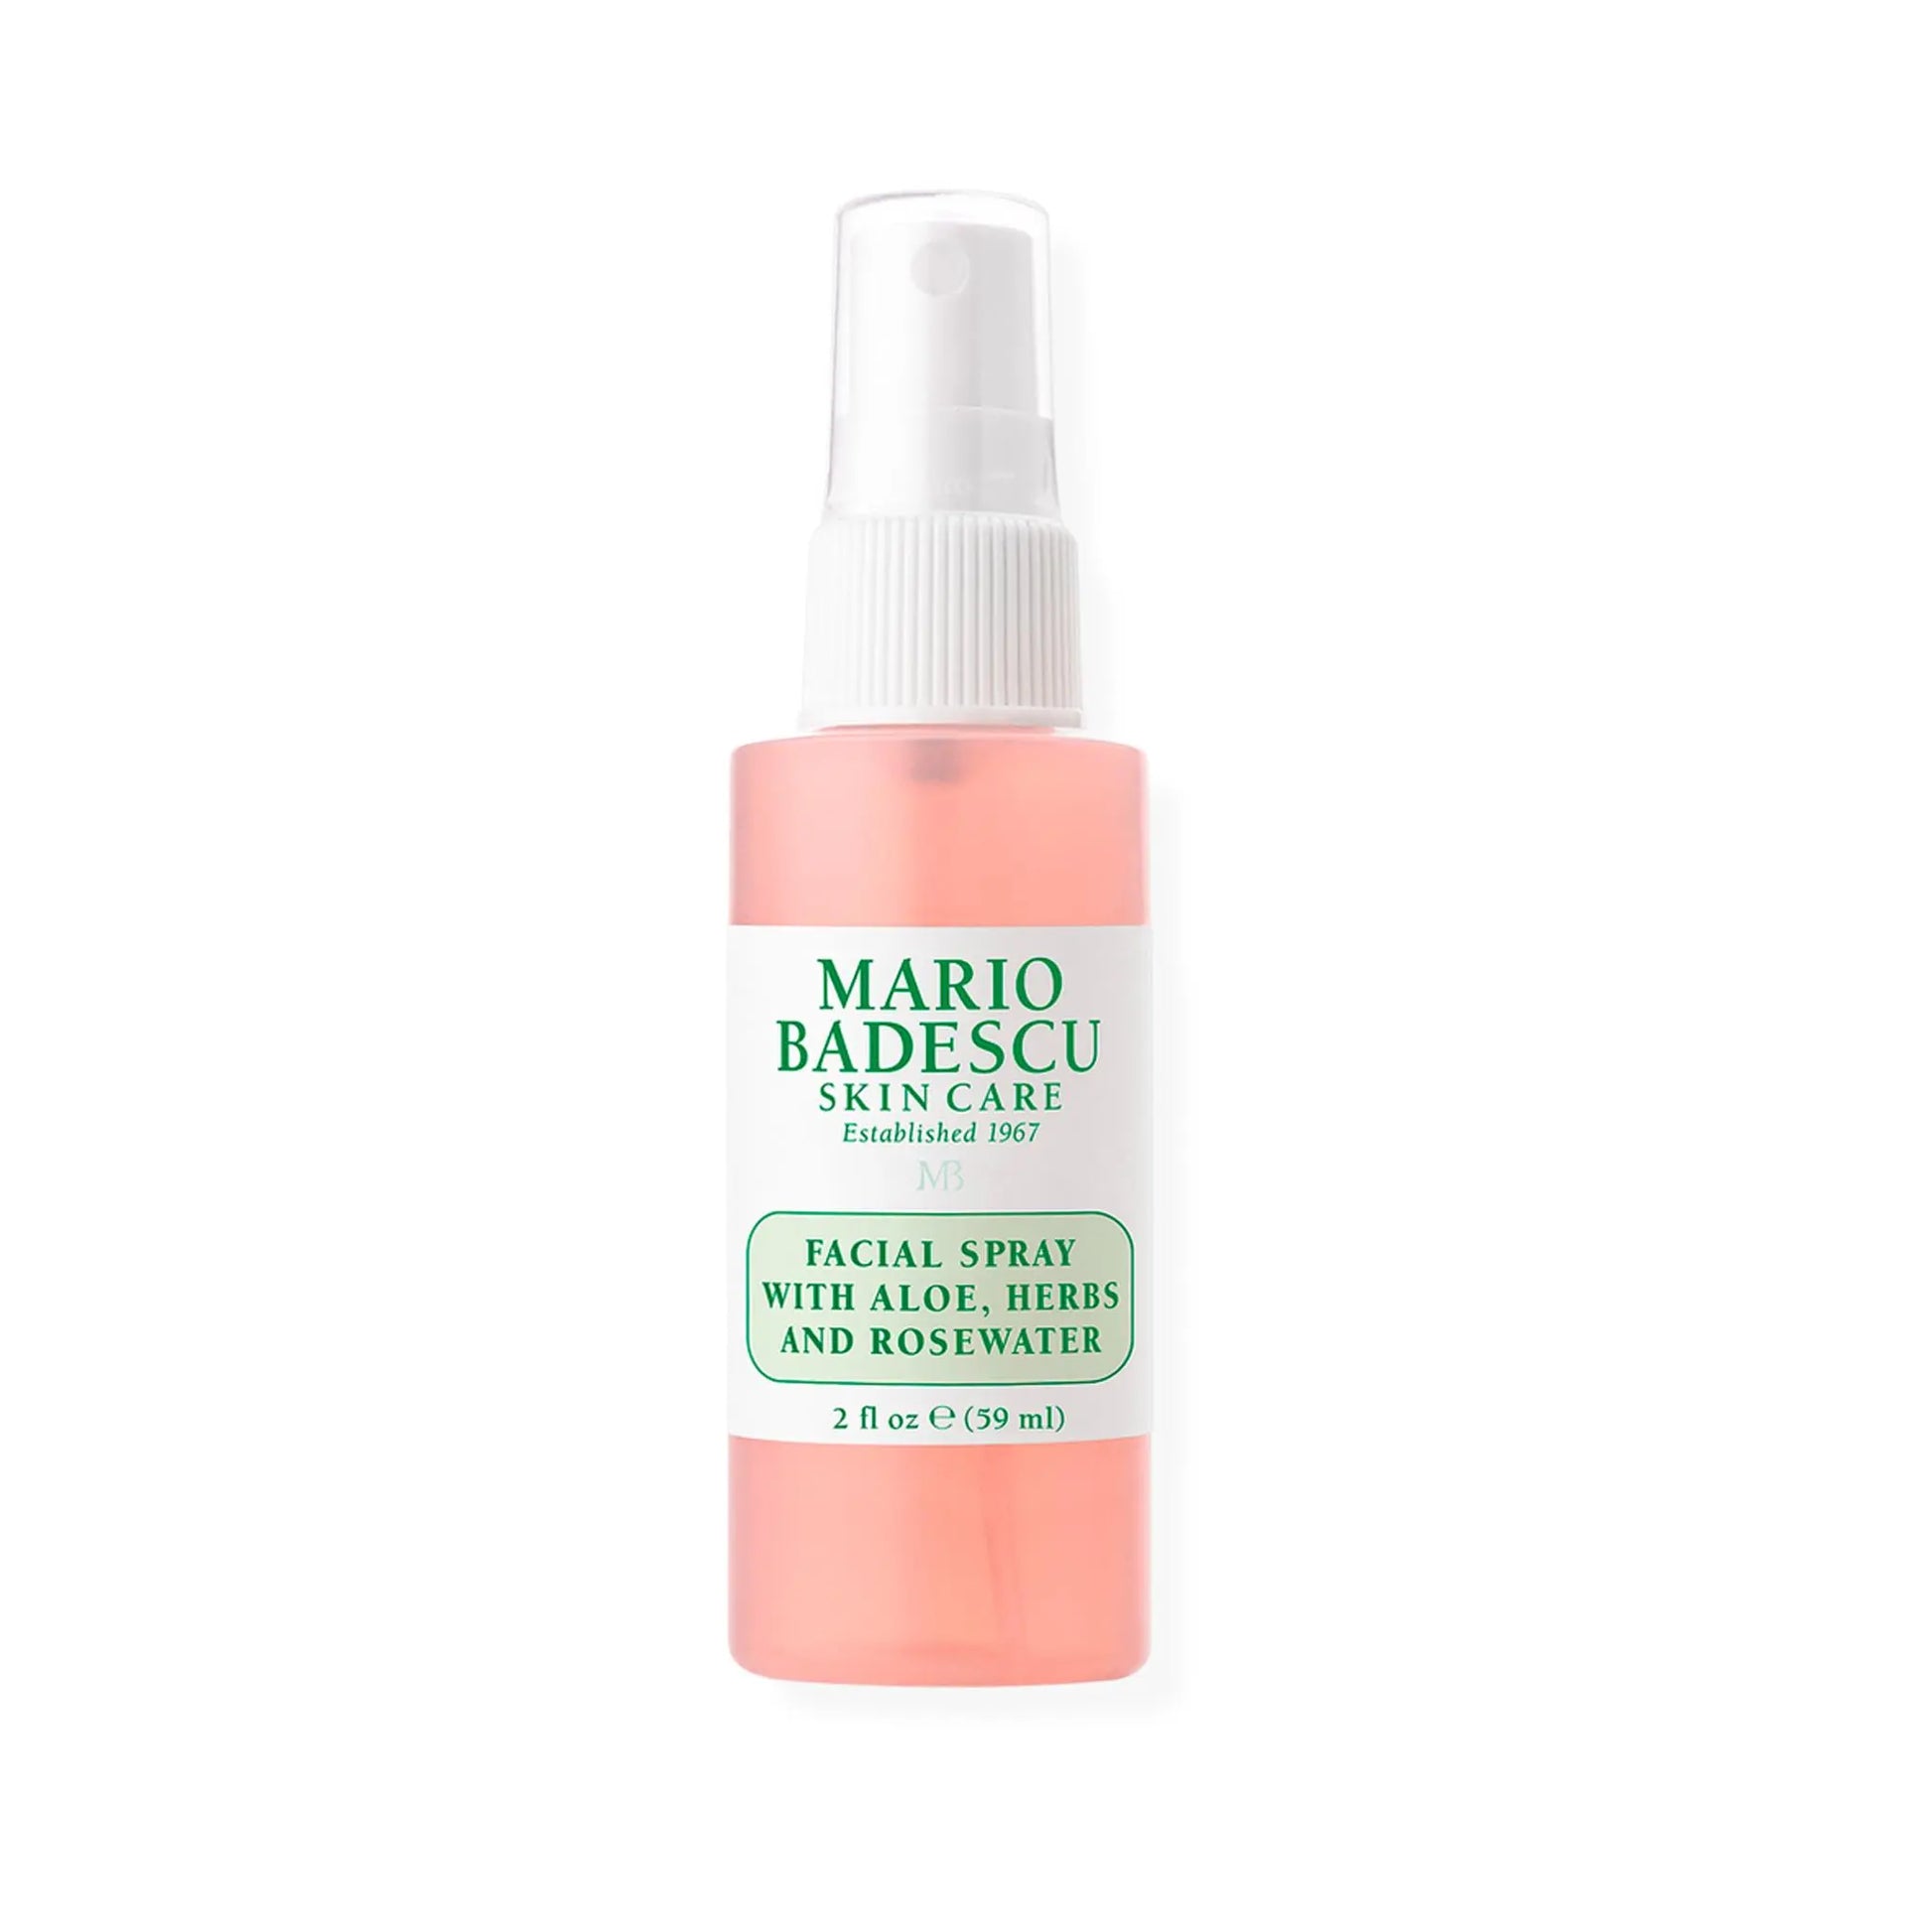 MARIO BADESCU Facial Spray with Aloe, Herbs and Rosewater 59ML Mario Badescu